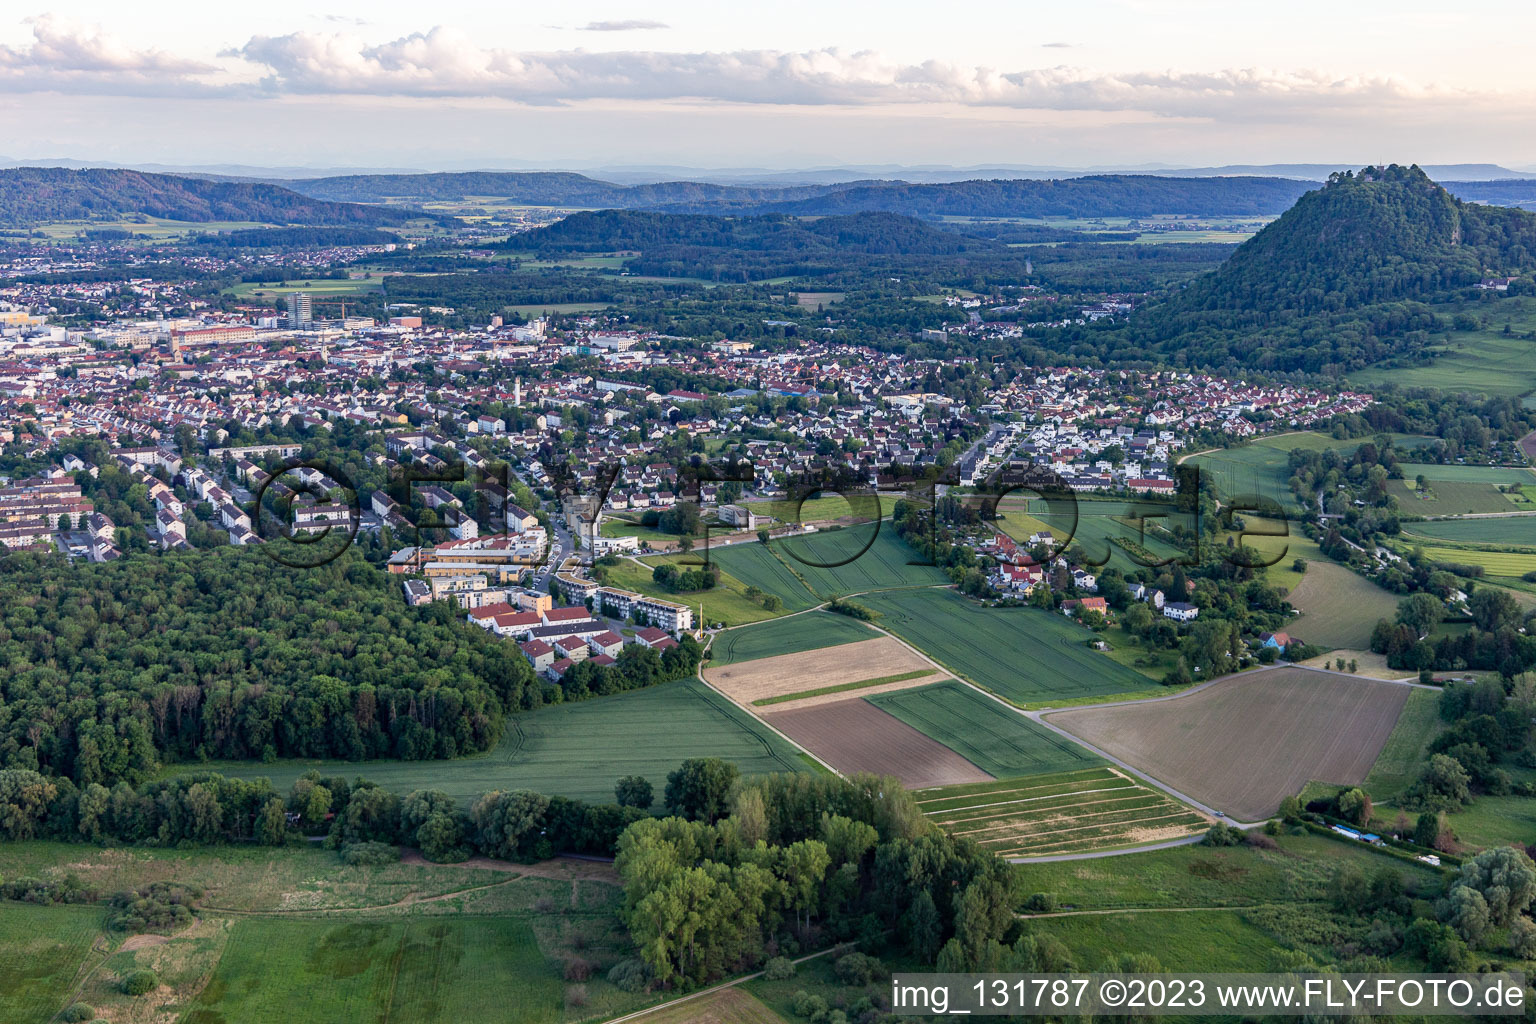 Luftbild von Singen im Bundesland Baden-Württemberg, Deutschland